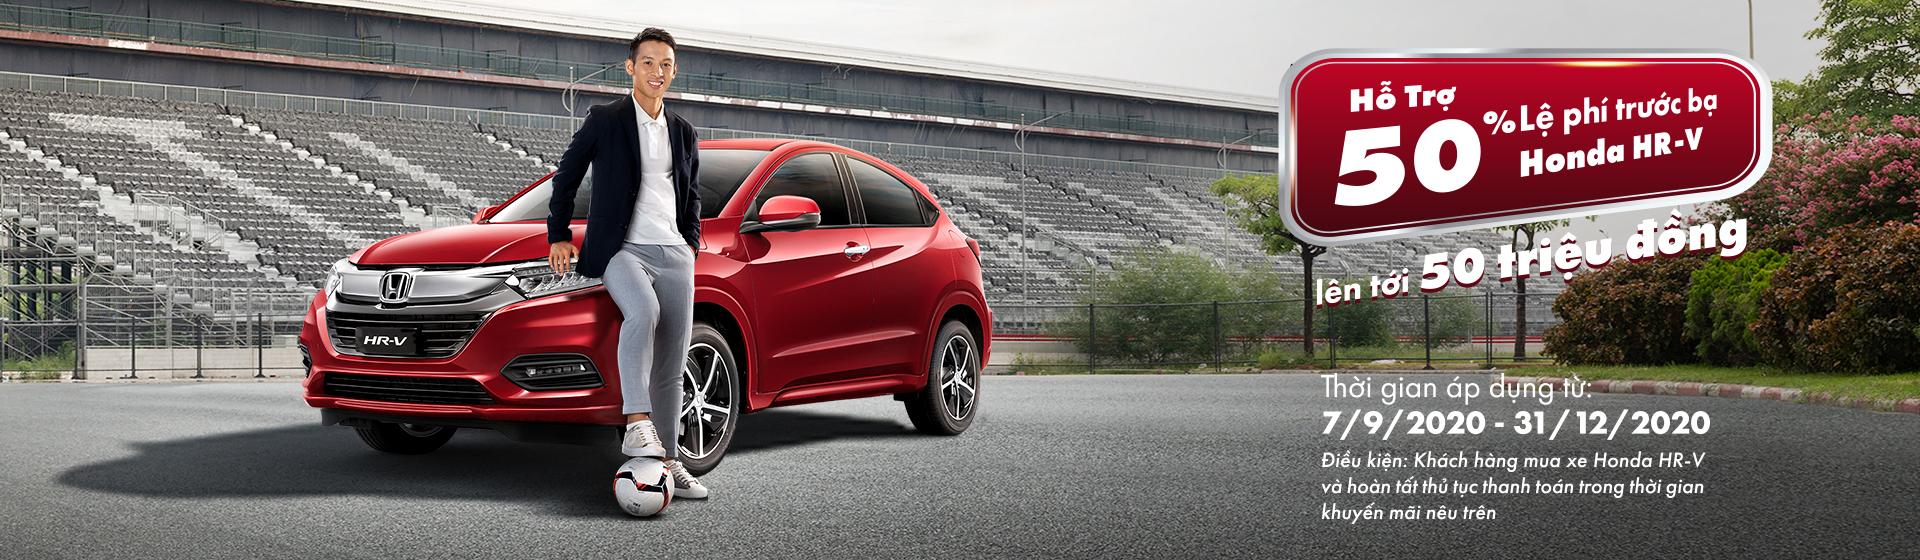 Đừng bỏ lỡ cơ hội sở hữu Honda HR-V 2020 phong cách thể thao, tiện nghi với ưu đãi vô cùng hấp dẫn lên tới 50 triệu đồng